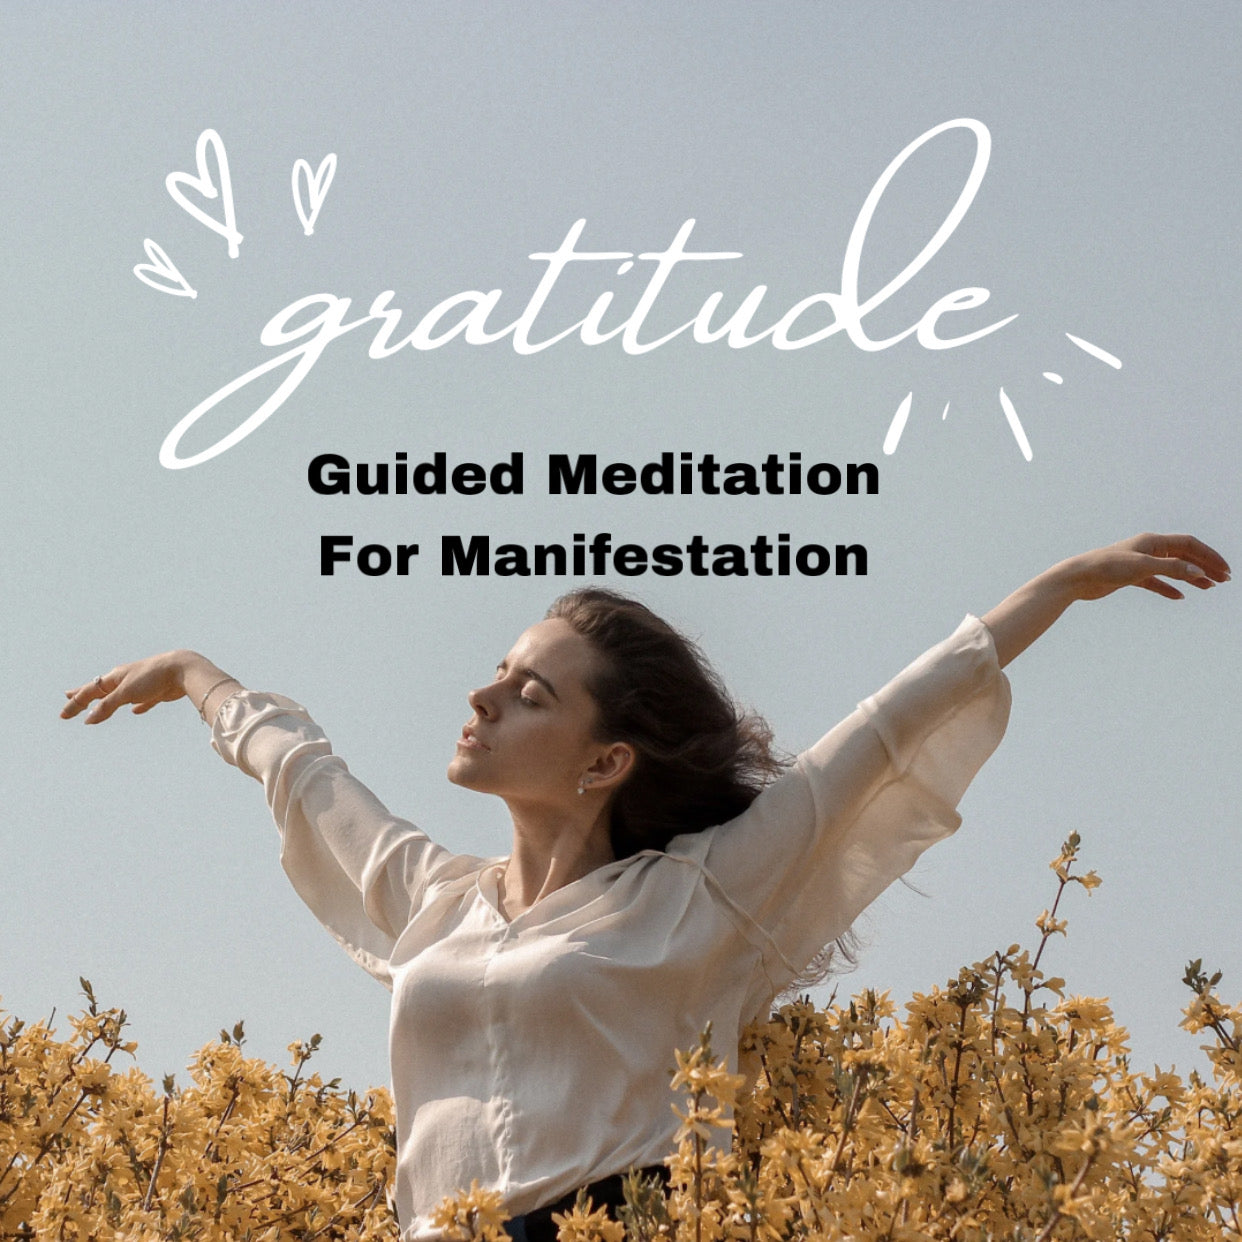 Guided Gratitude Meditation